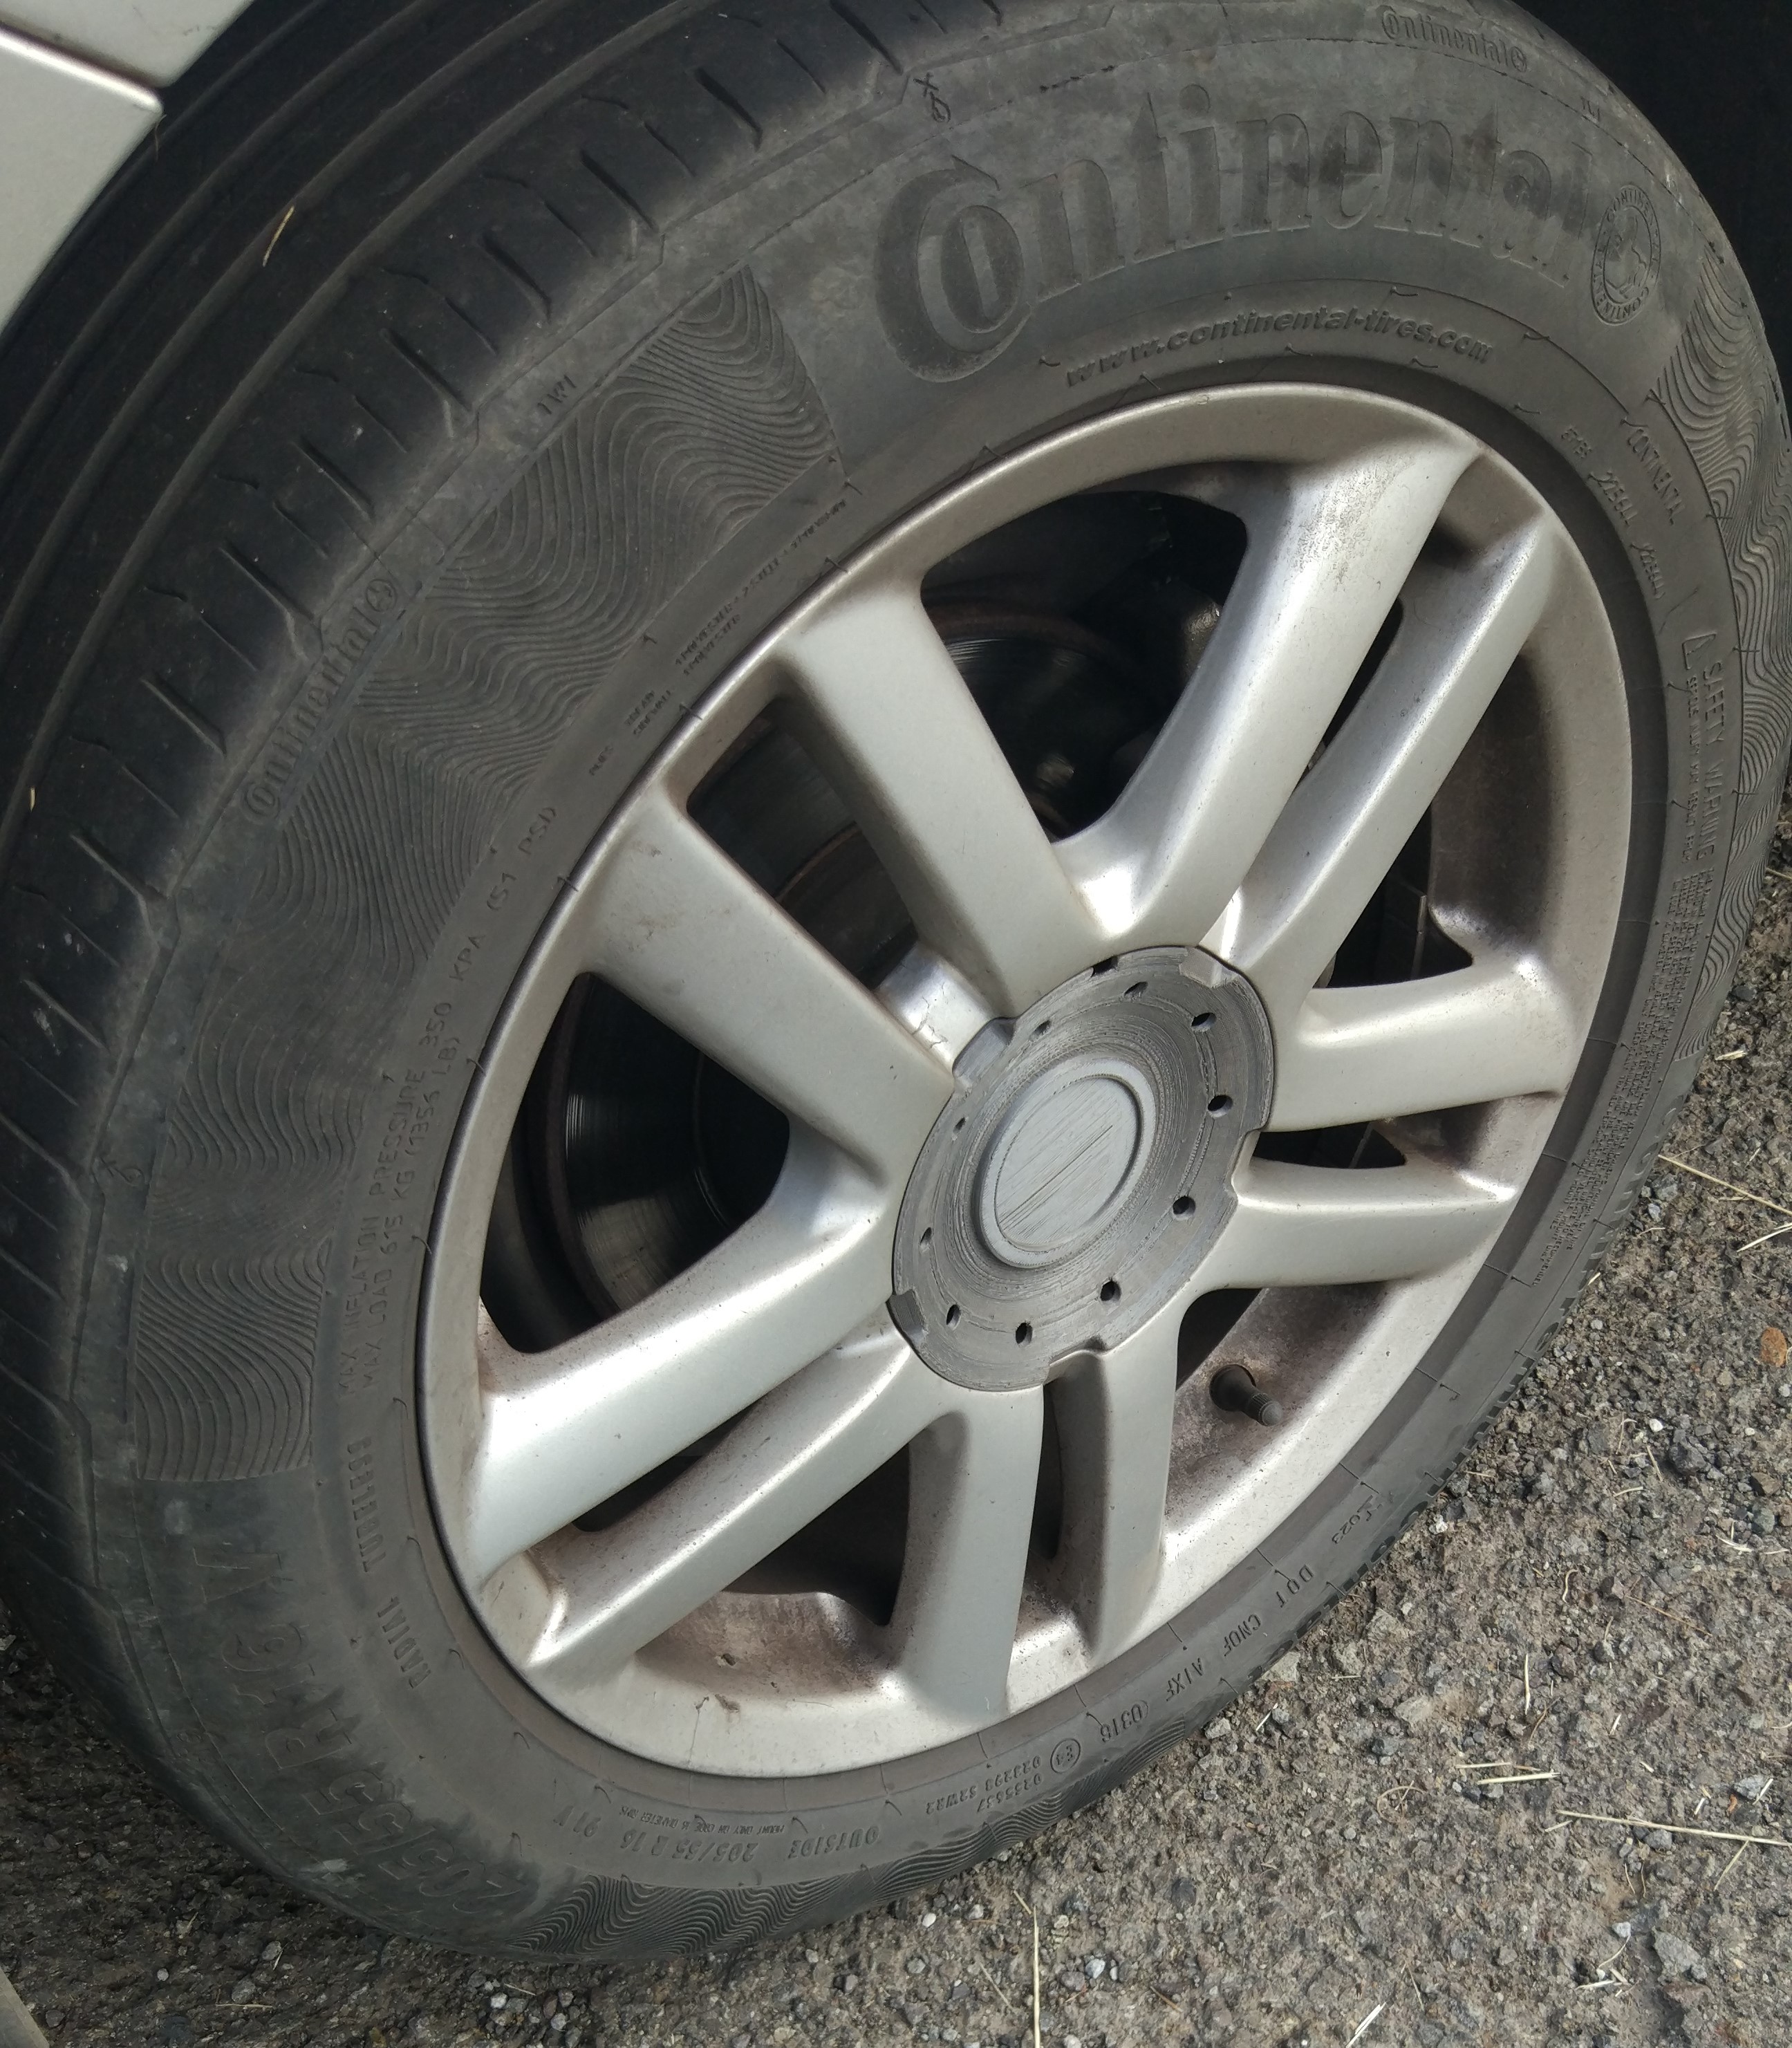 VW wheel bolt cover